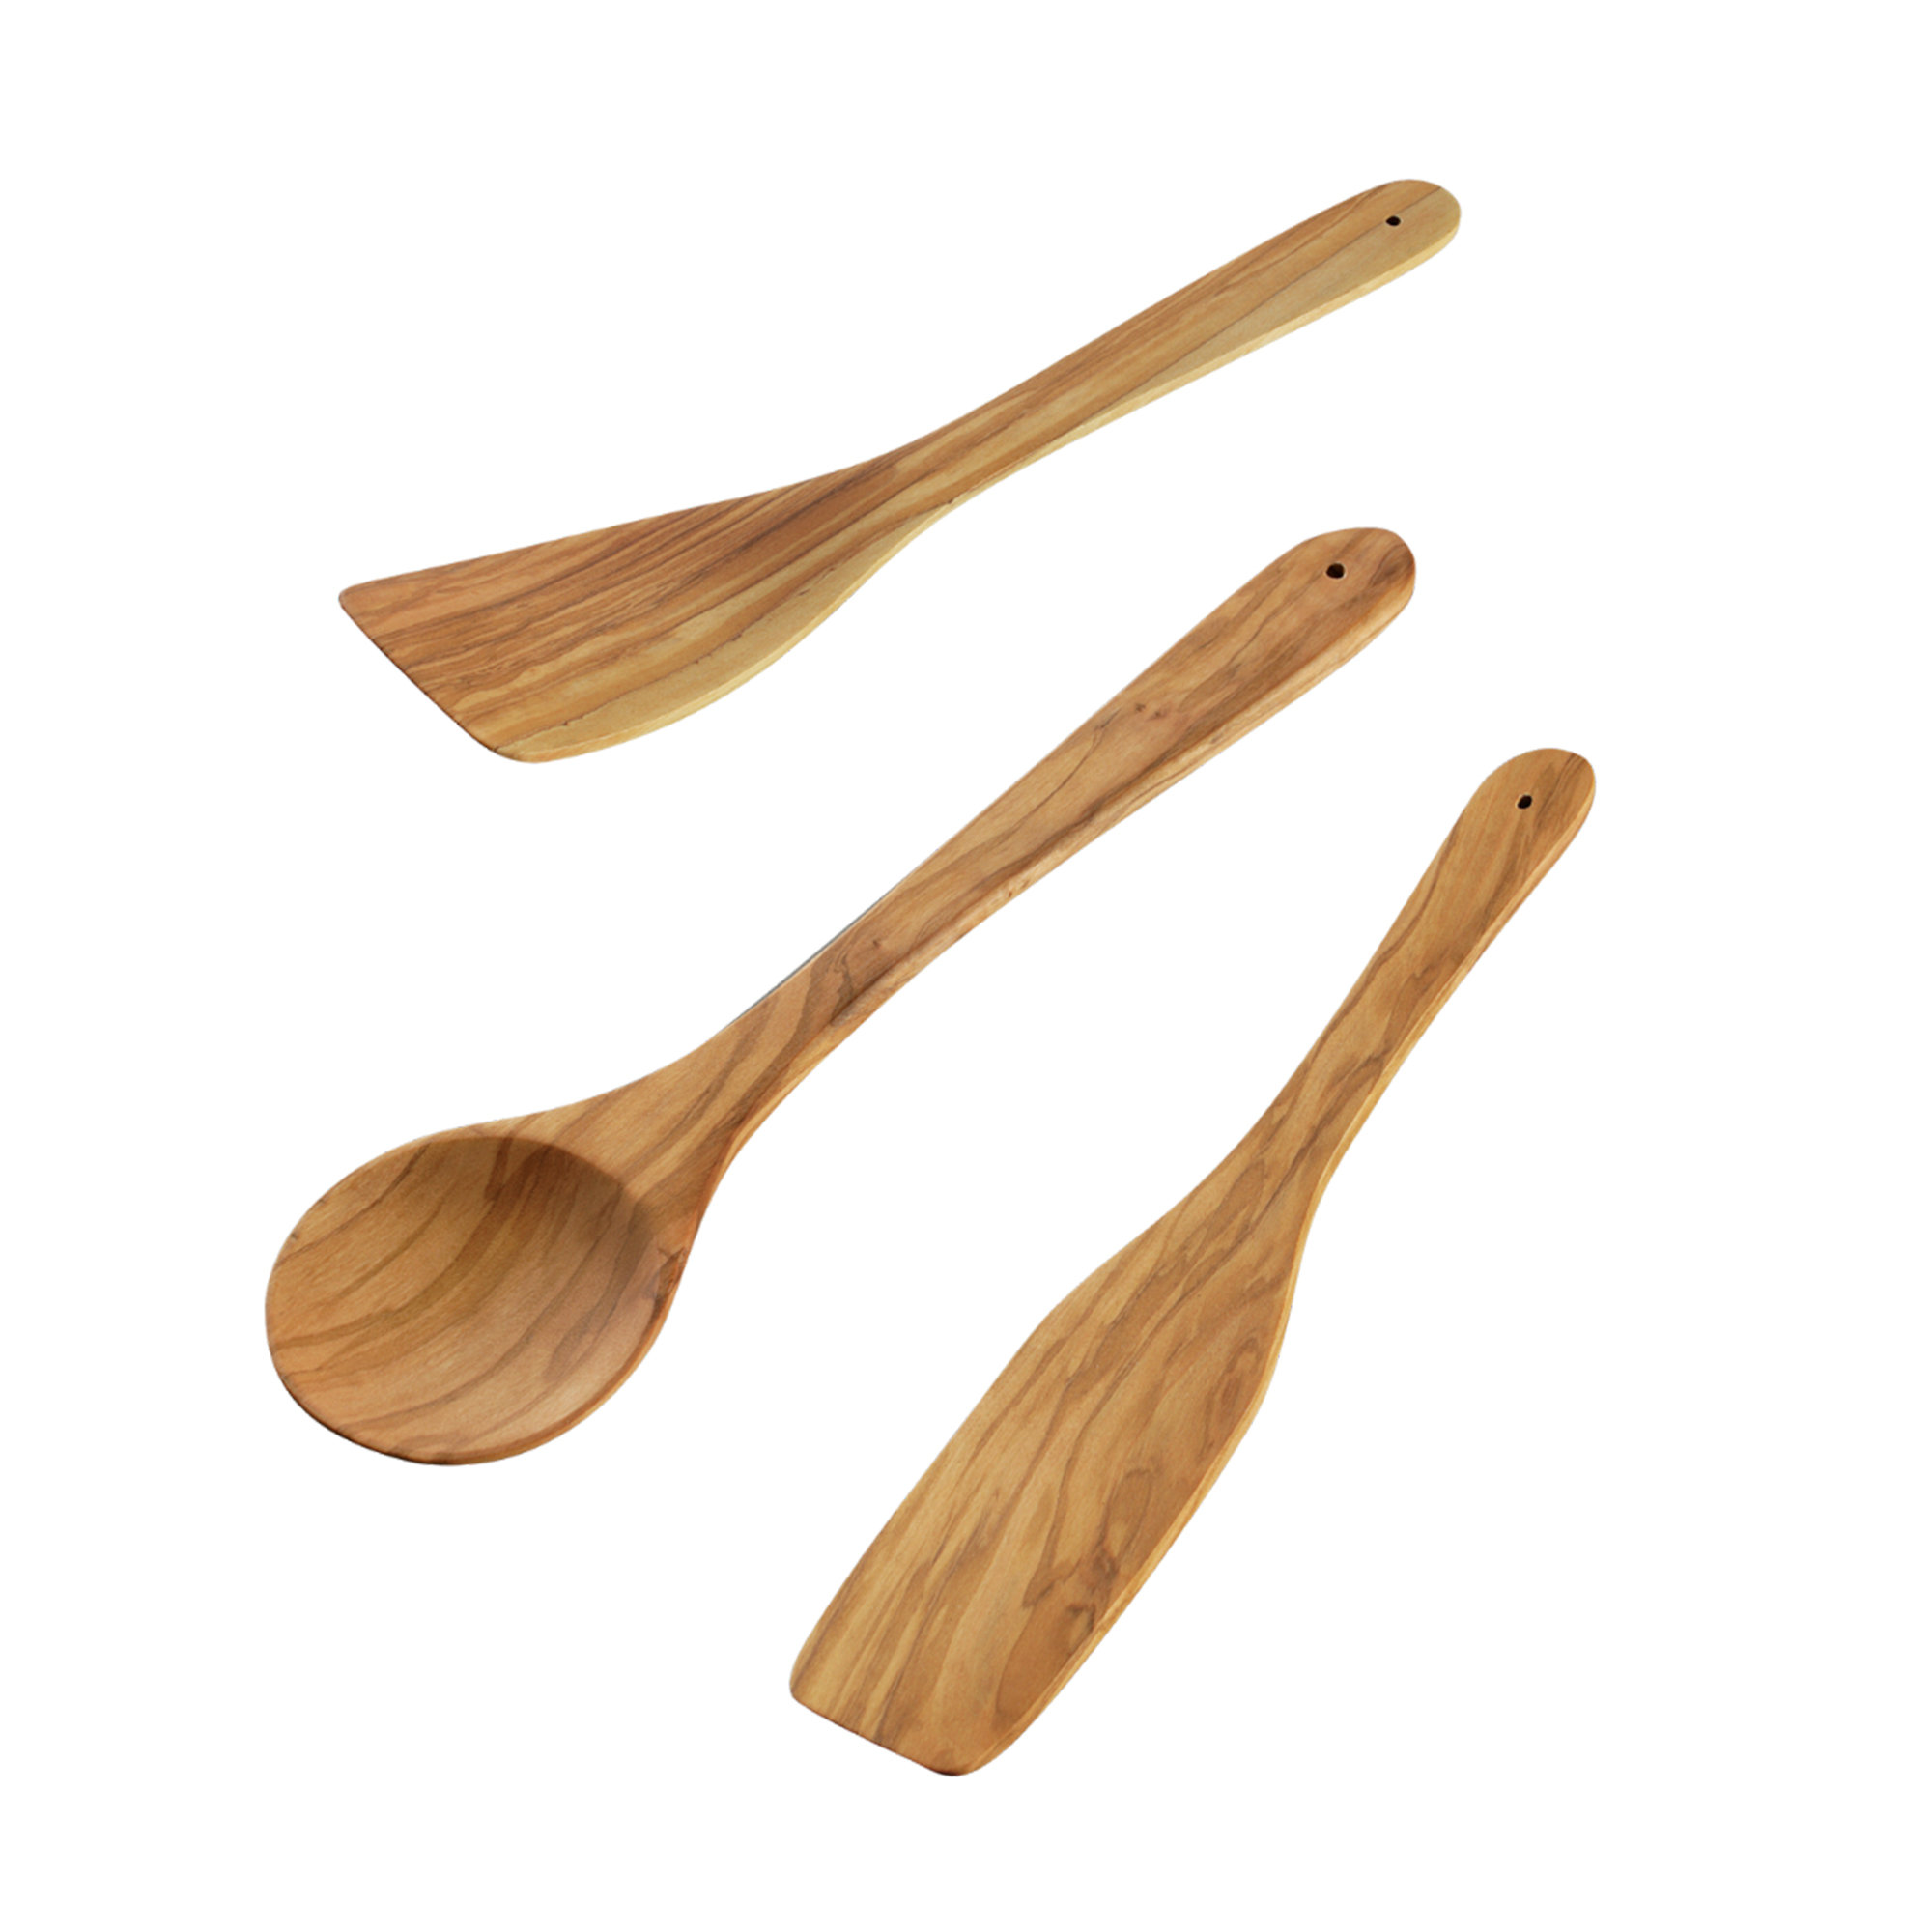 https://assets.wfcdn.com/im/23882225/compr-r85/2454/245466143/cilio-toscana-3-piece-wood-assorted-kitchen-utensil-set.jpg